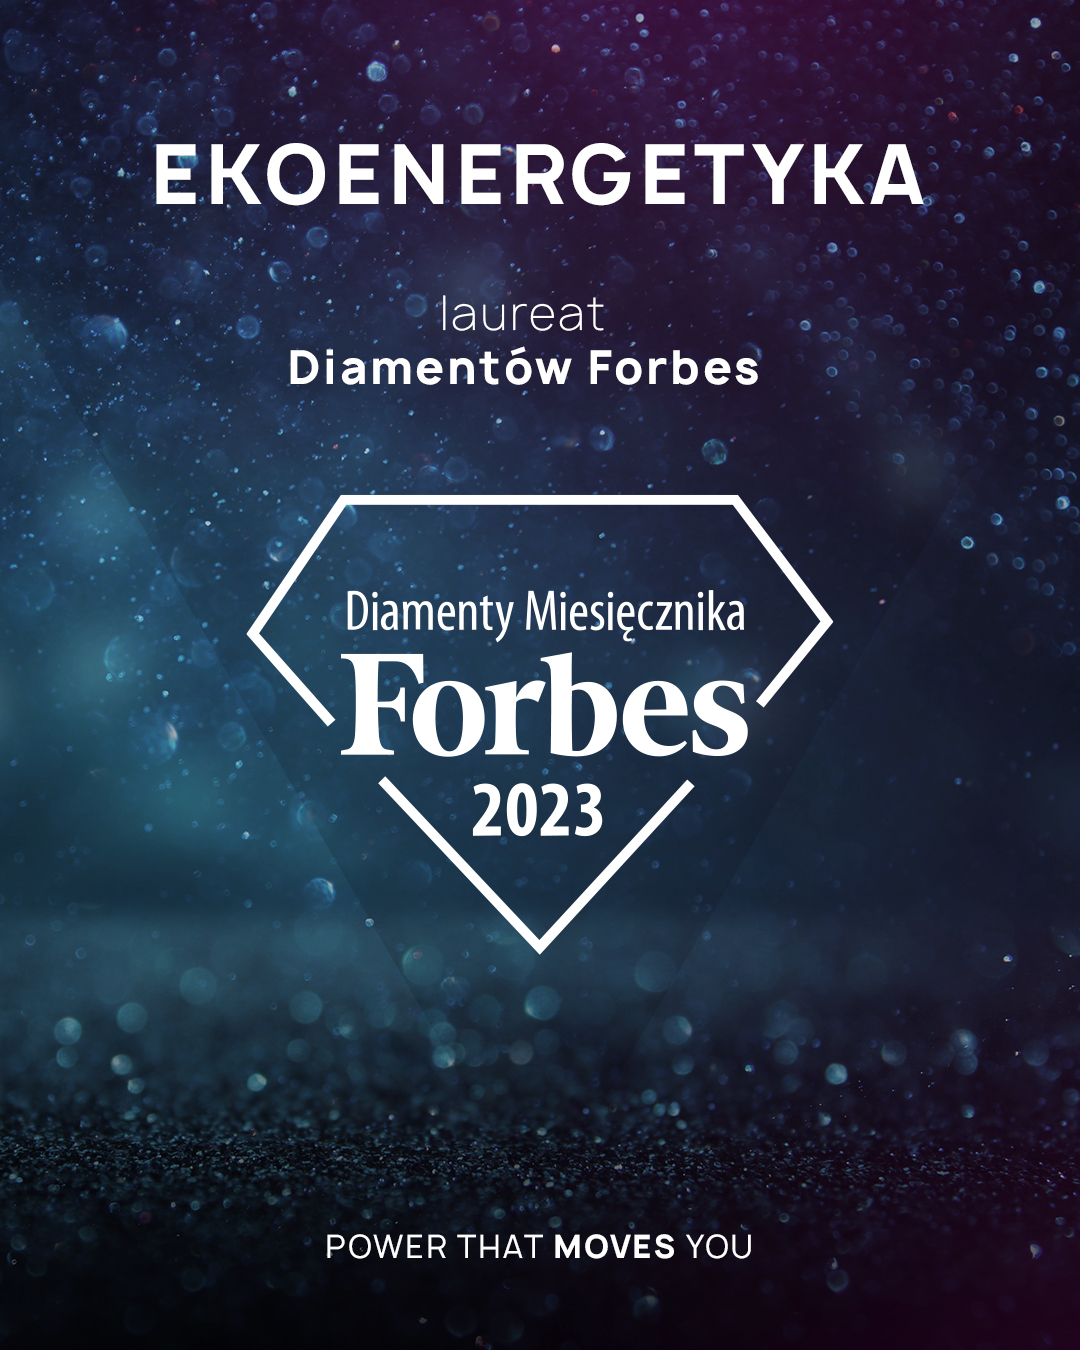 Ekoenergetyka laureatem Diamentów Forbes